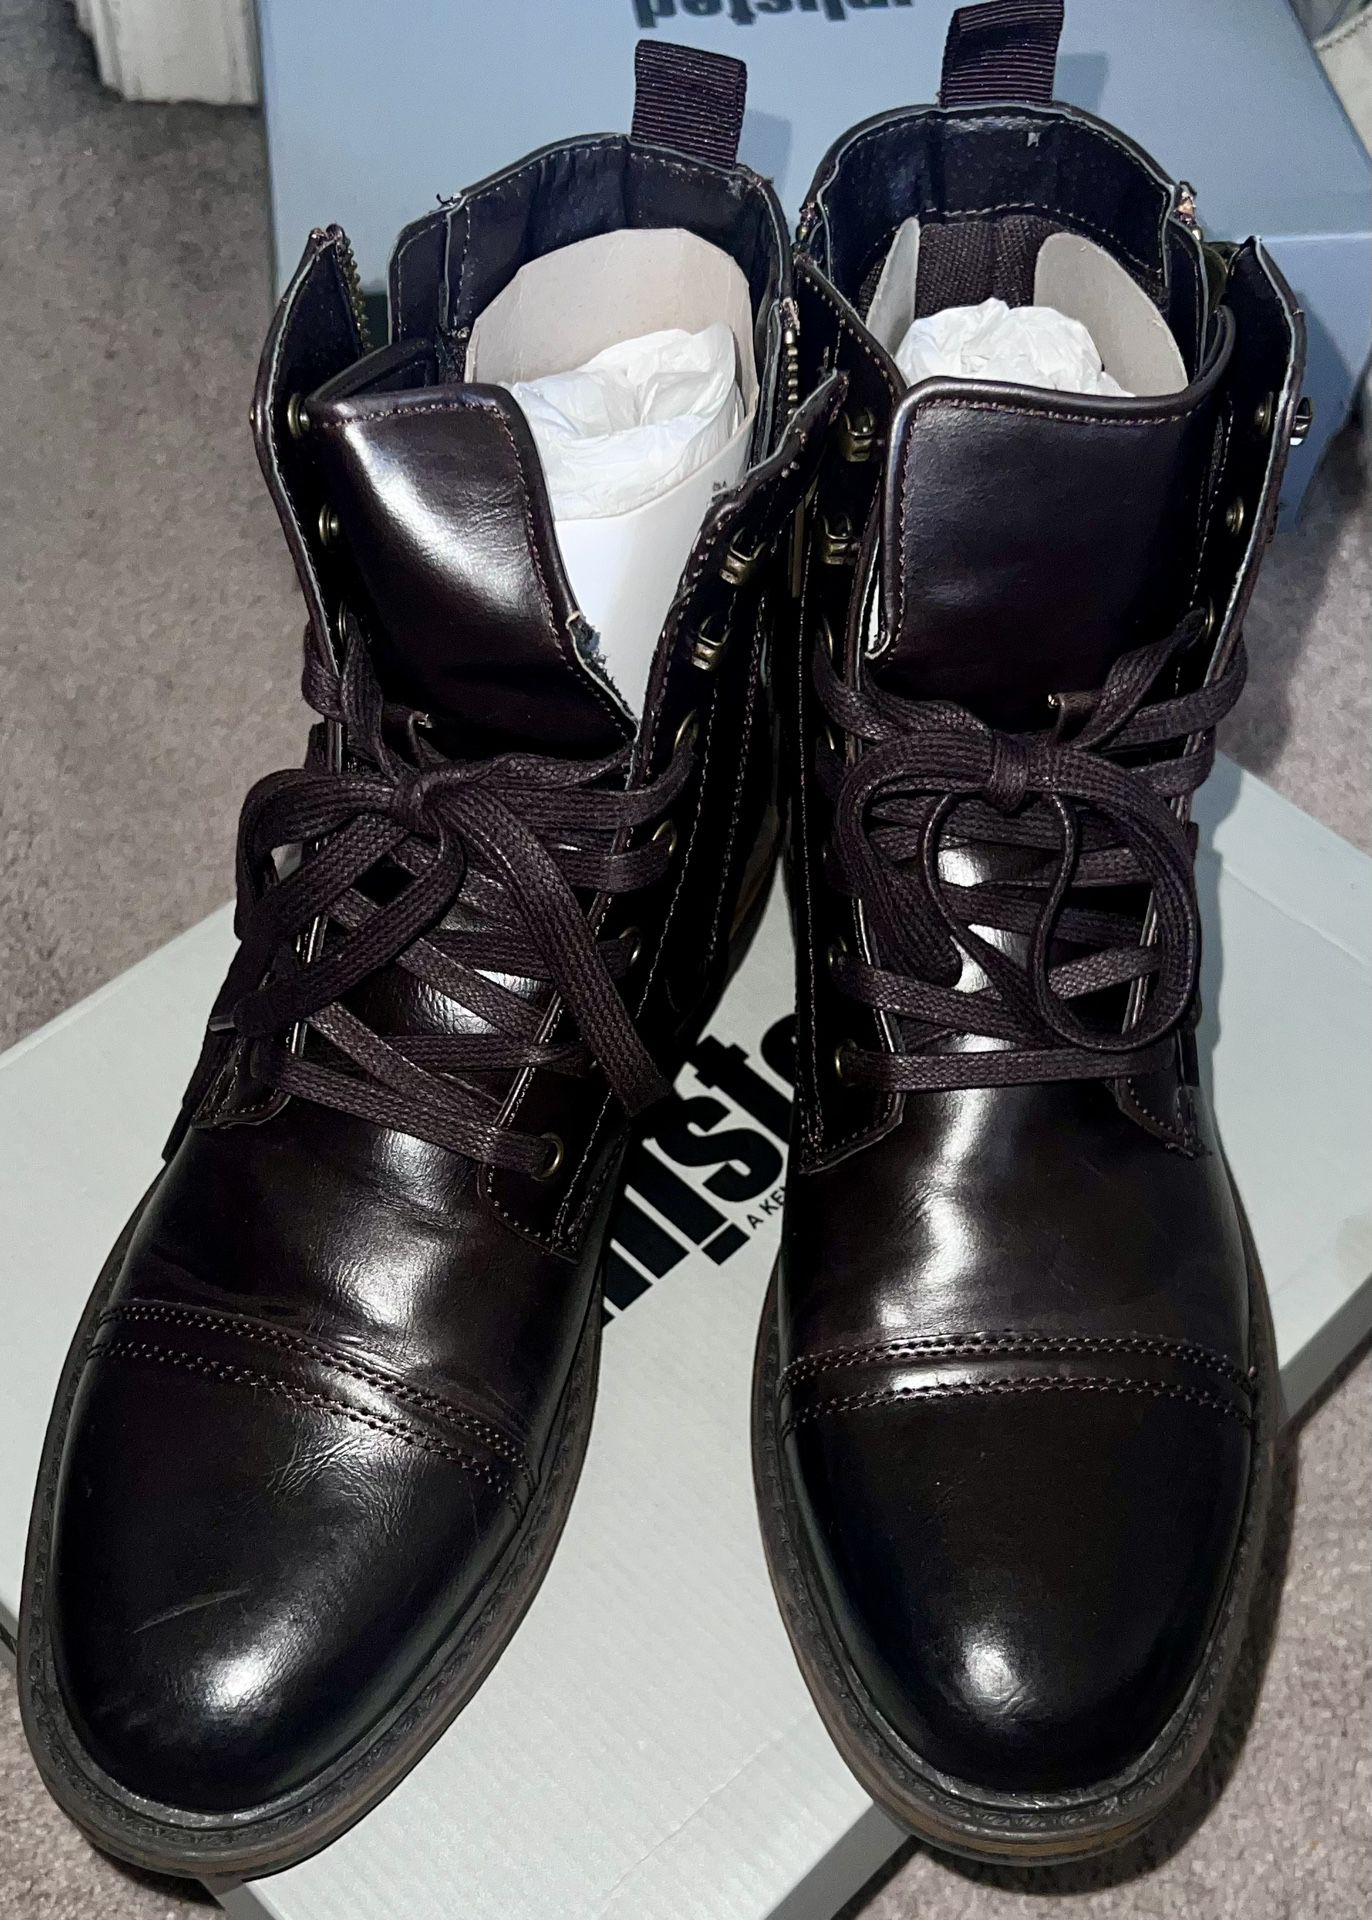 Kenneth Cole Cognac Boots Men’s Sz 8.5